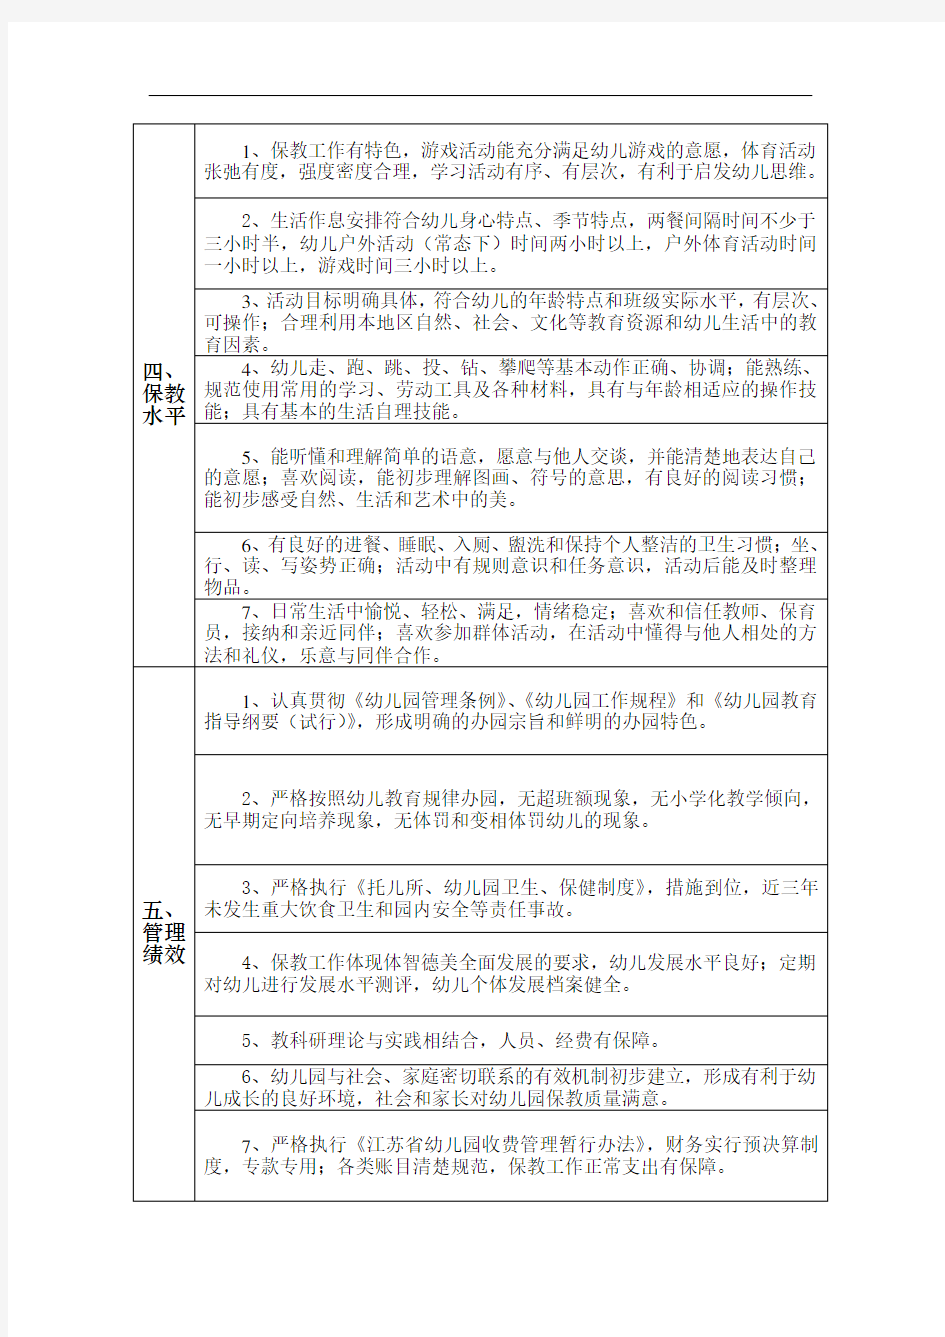 江苏省优质幼儿园评估标准(同名44933)